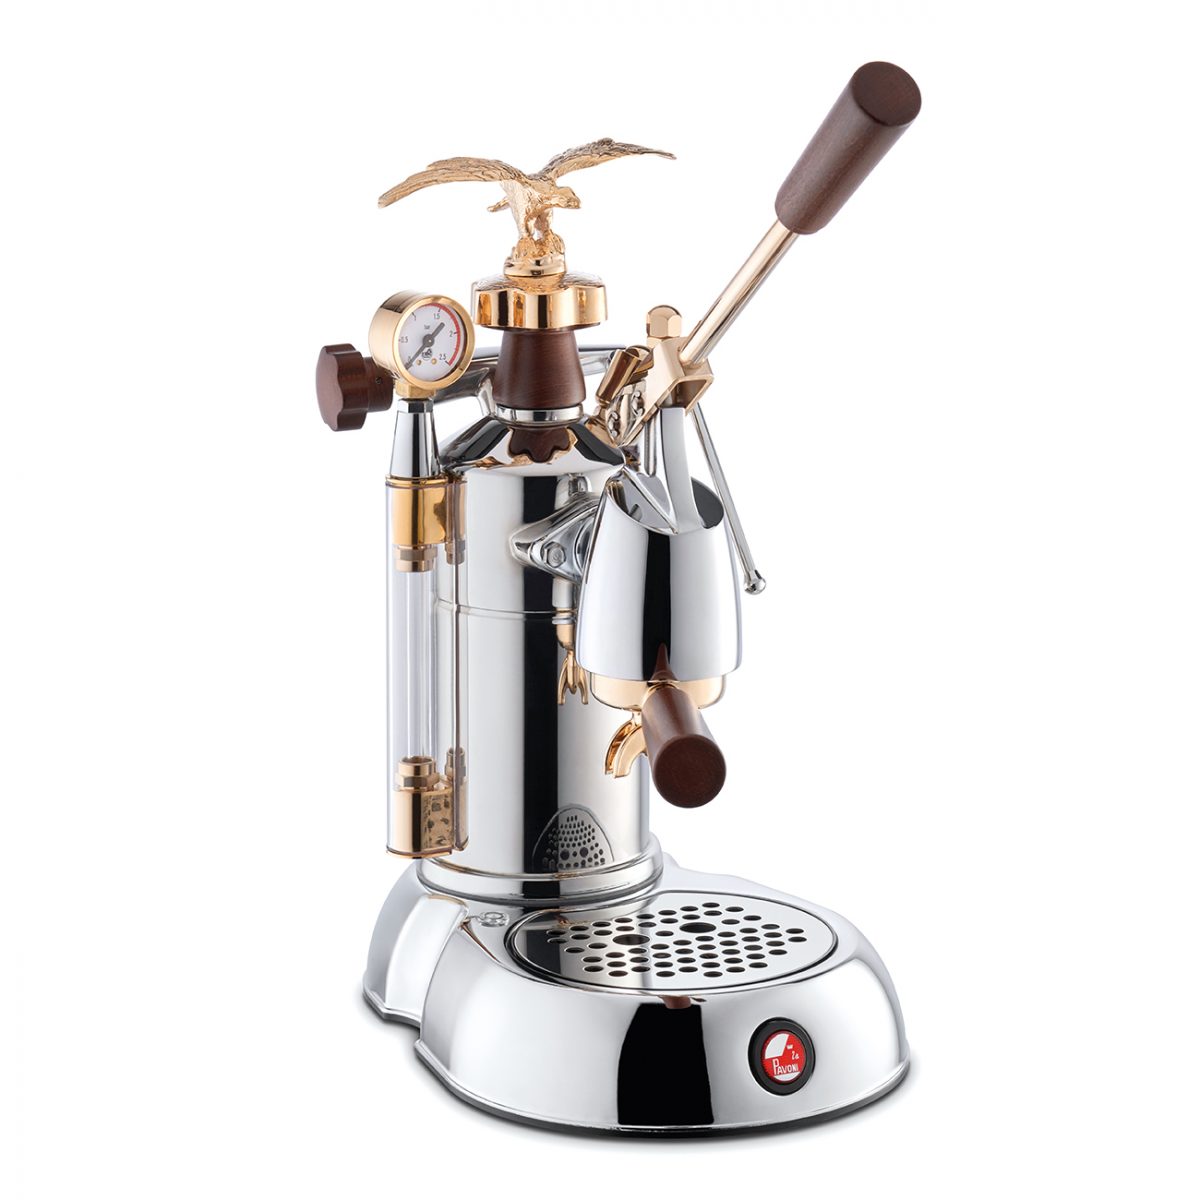 La Pavoni Kaffeemaschine Espresso Expo 2015